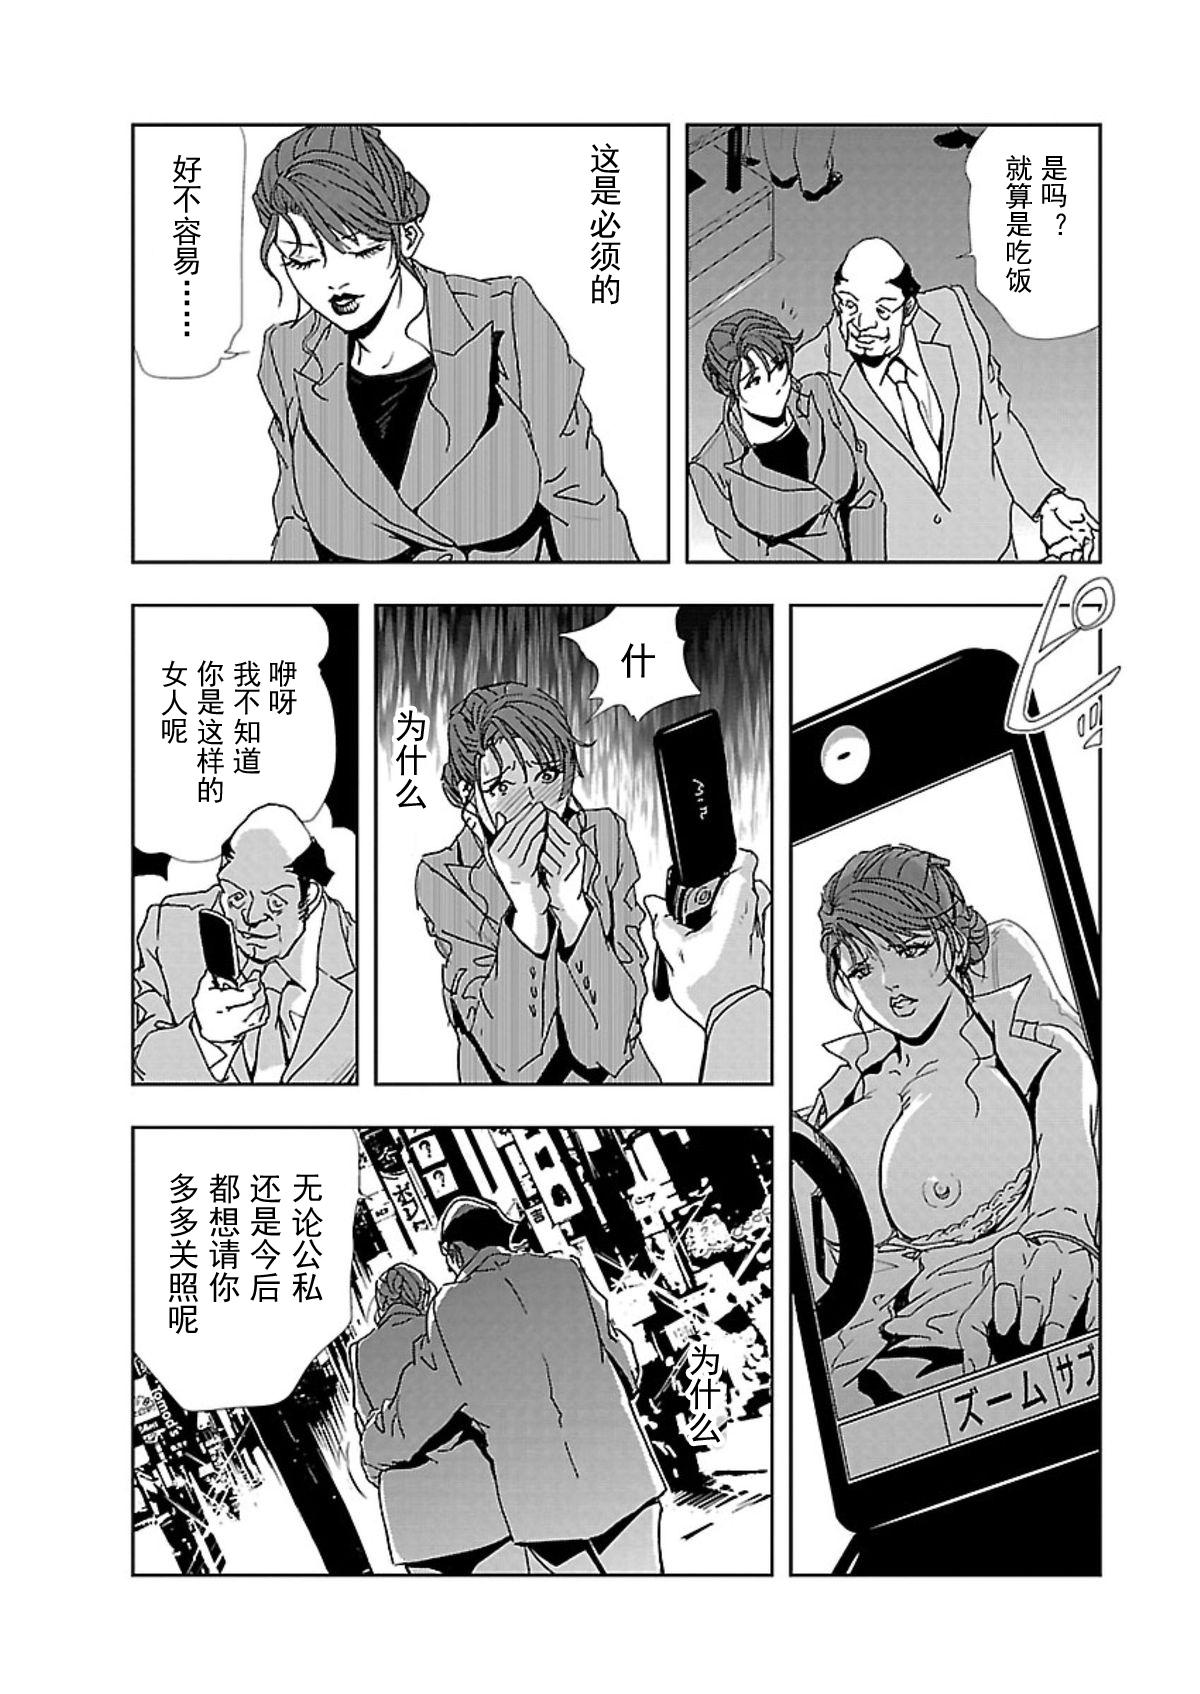 【不可视汉化】[Misaki Yukihiro] Nikuhisyo Yukiko chapter 01  [Digital] 20